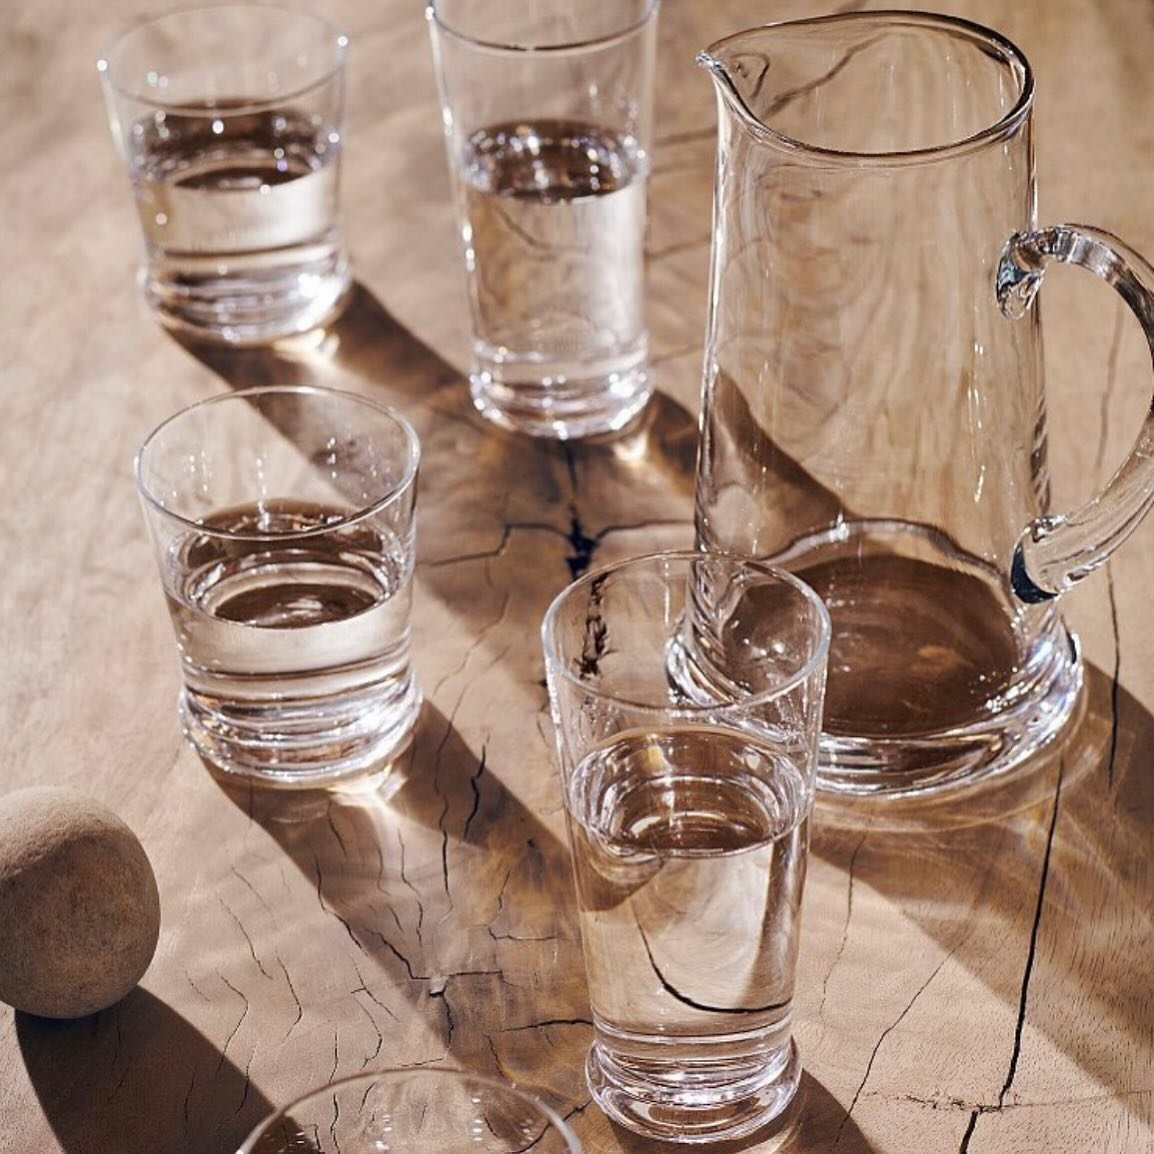 Ralph Lauren Home, Ethan Glass Collection

Den vakre glass-kolleksjonen passer perfekt til litt uformelle samlinger, grillfesten eller p&aring; sommerhuset.
Kolleksjonen inneholder ogs&aring; en lekker mugge, sk&aring;l til is biter og kakefat

#ralp